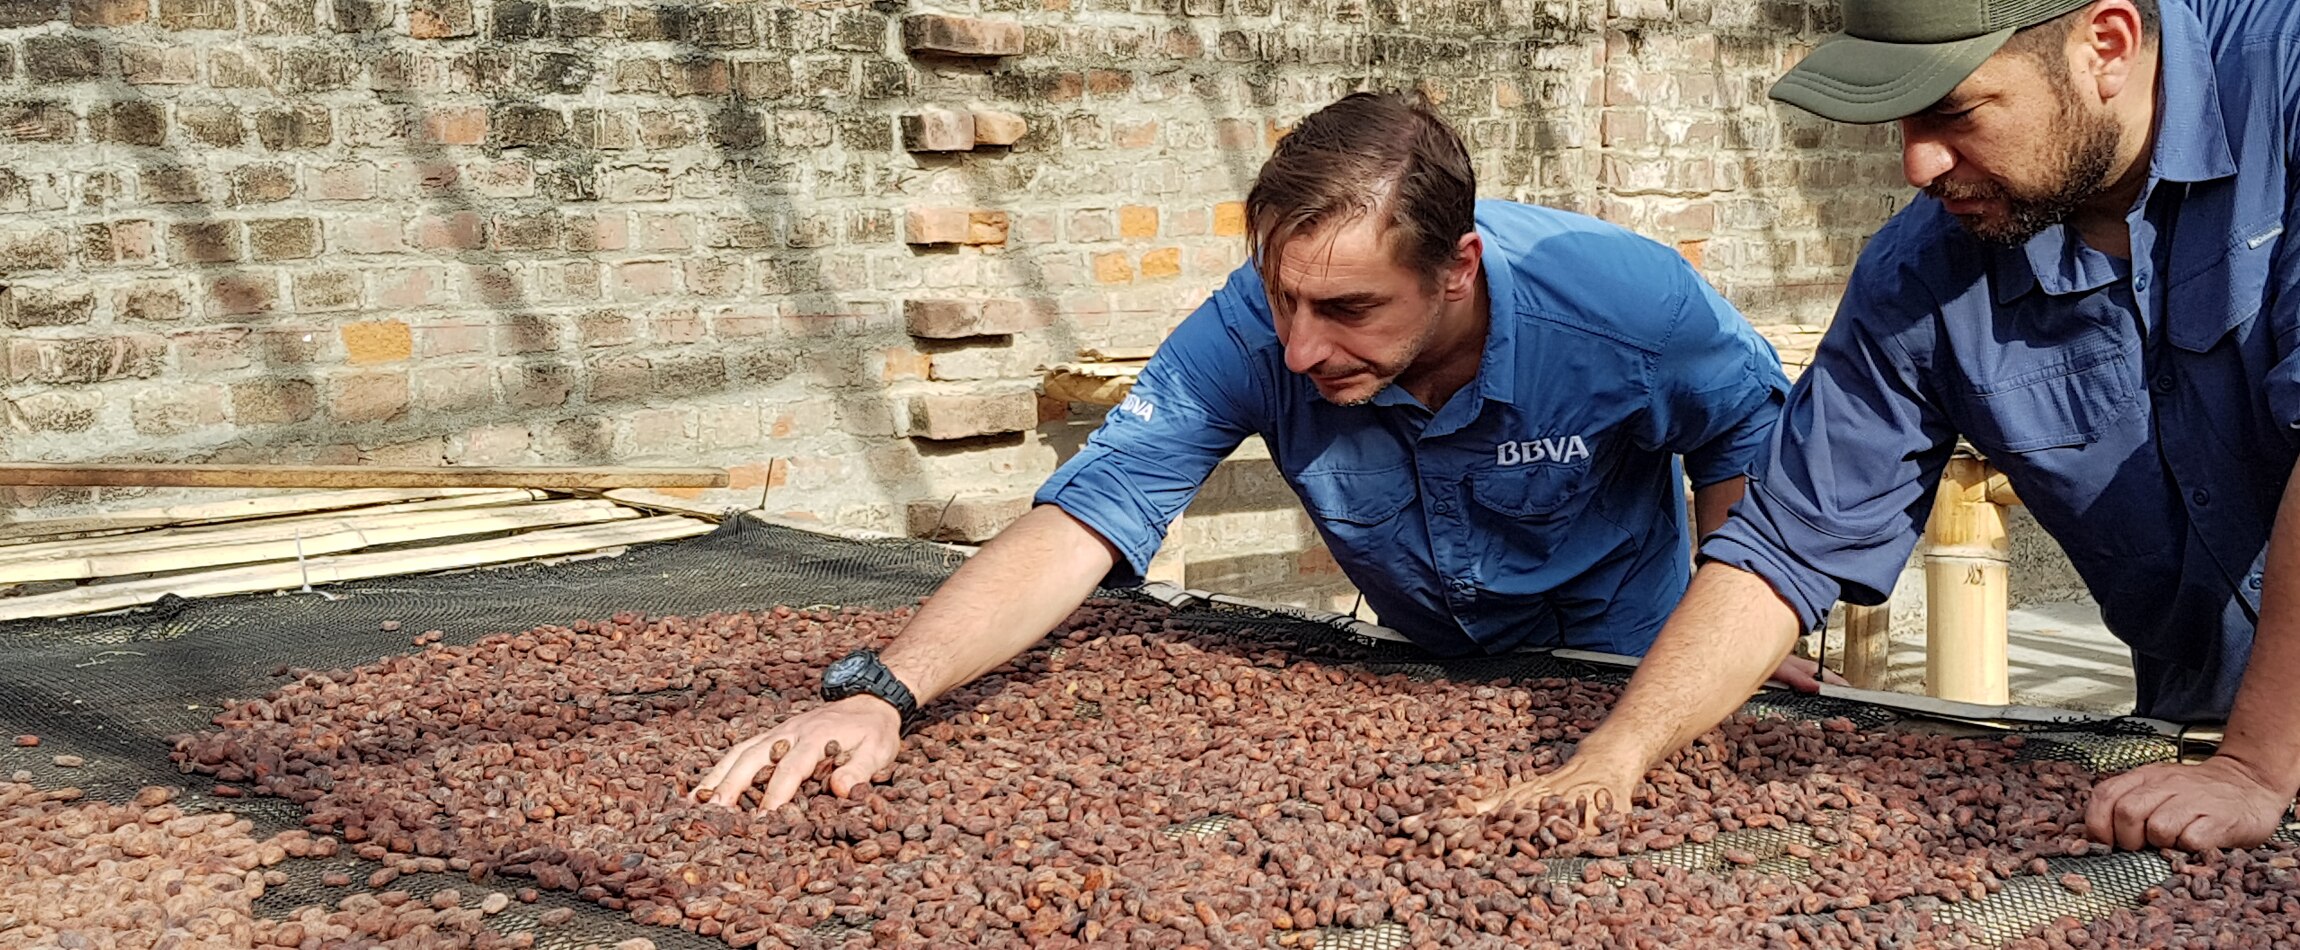 Jordi Roca palpa un secadero de granos de cacao blanco en su visita con BBVA a Perú